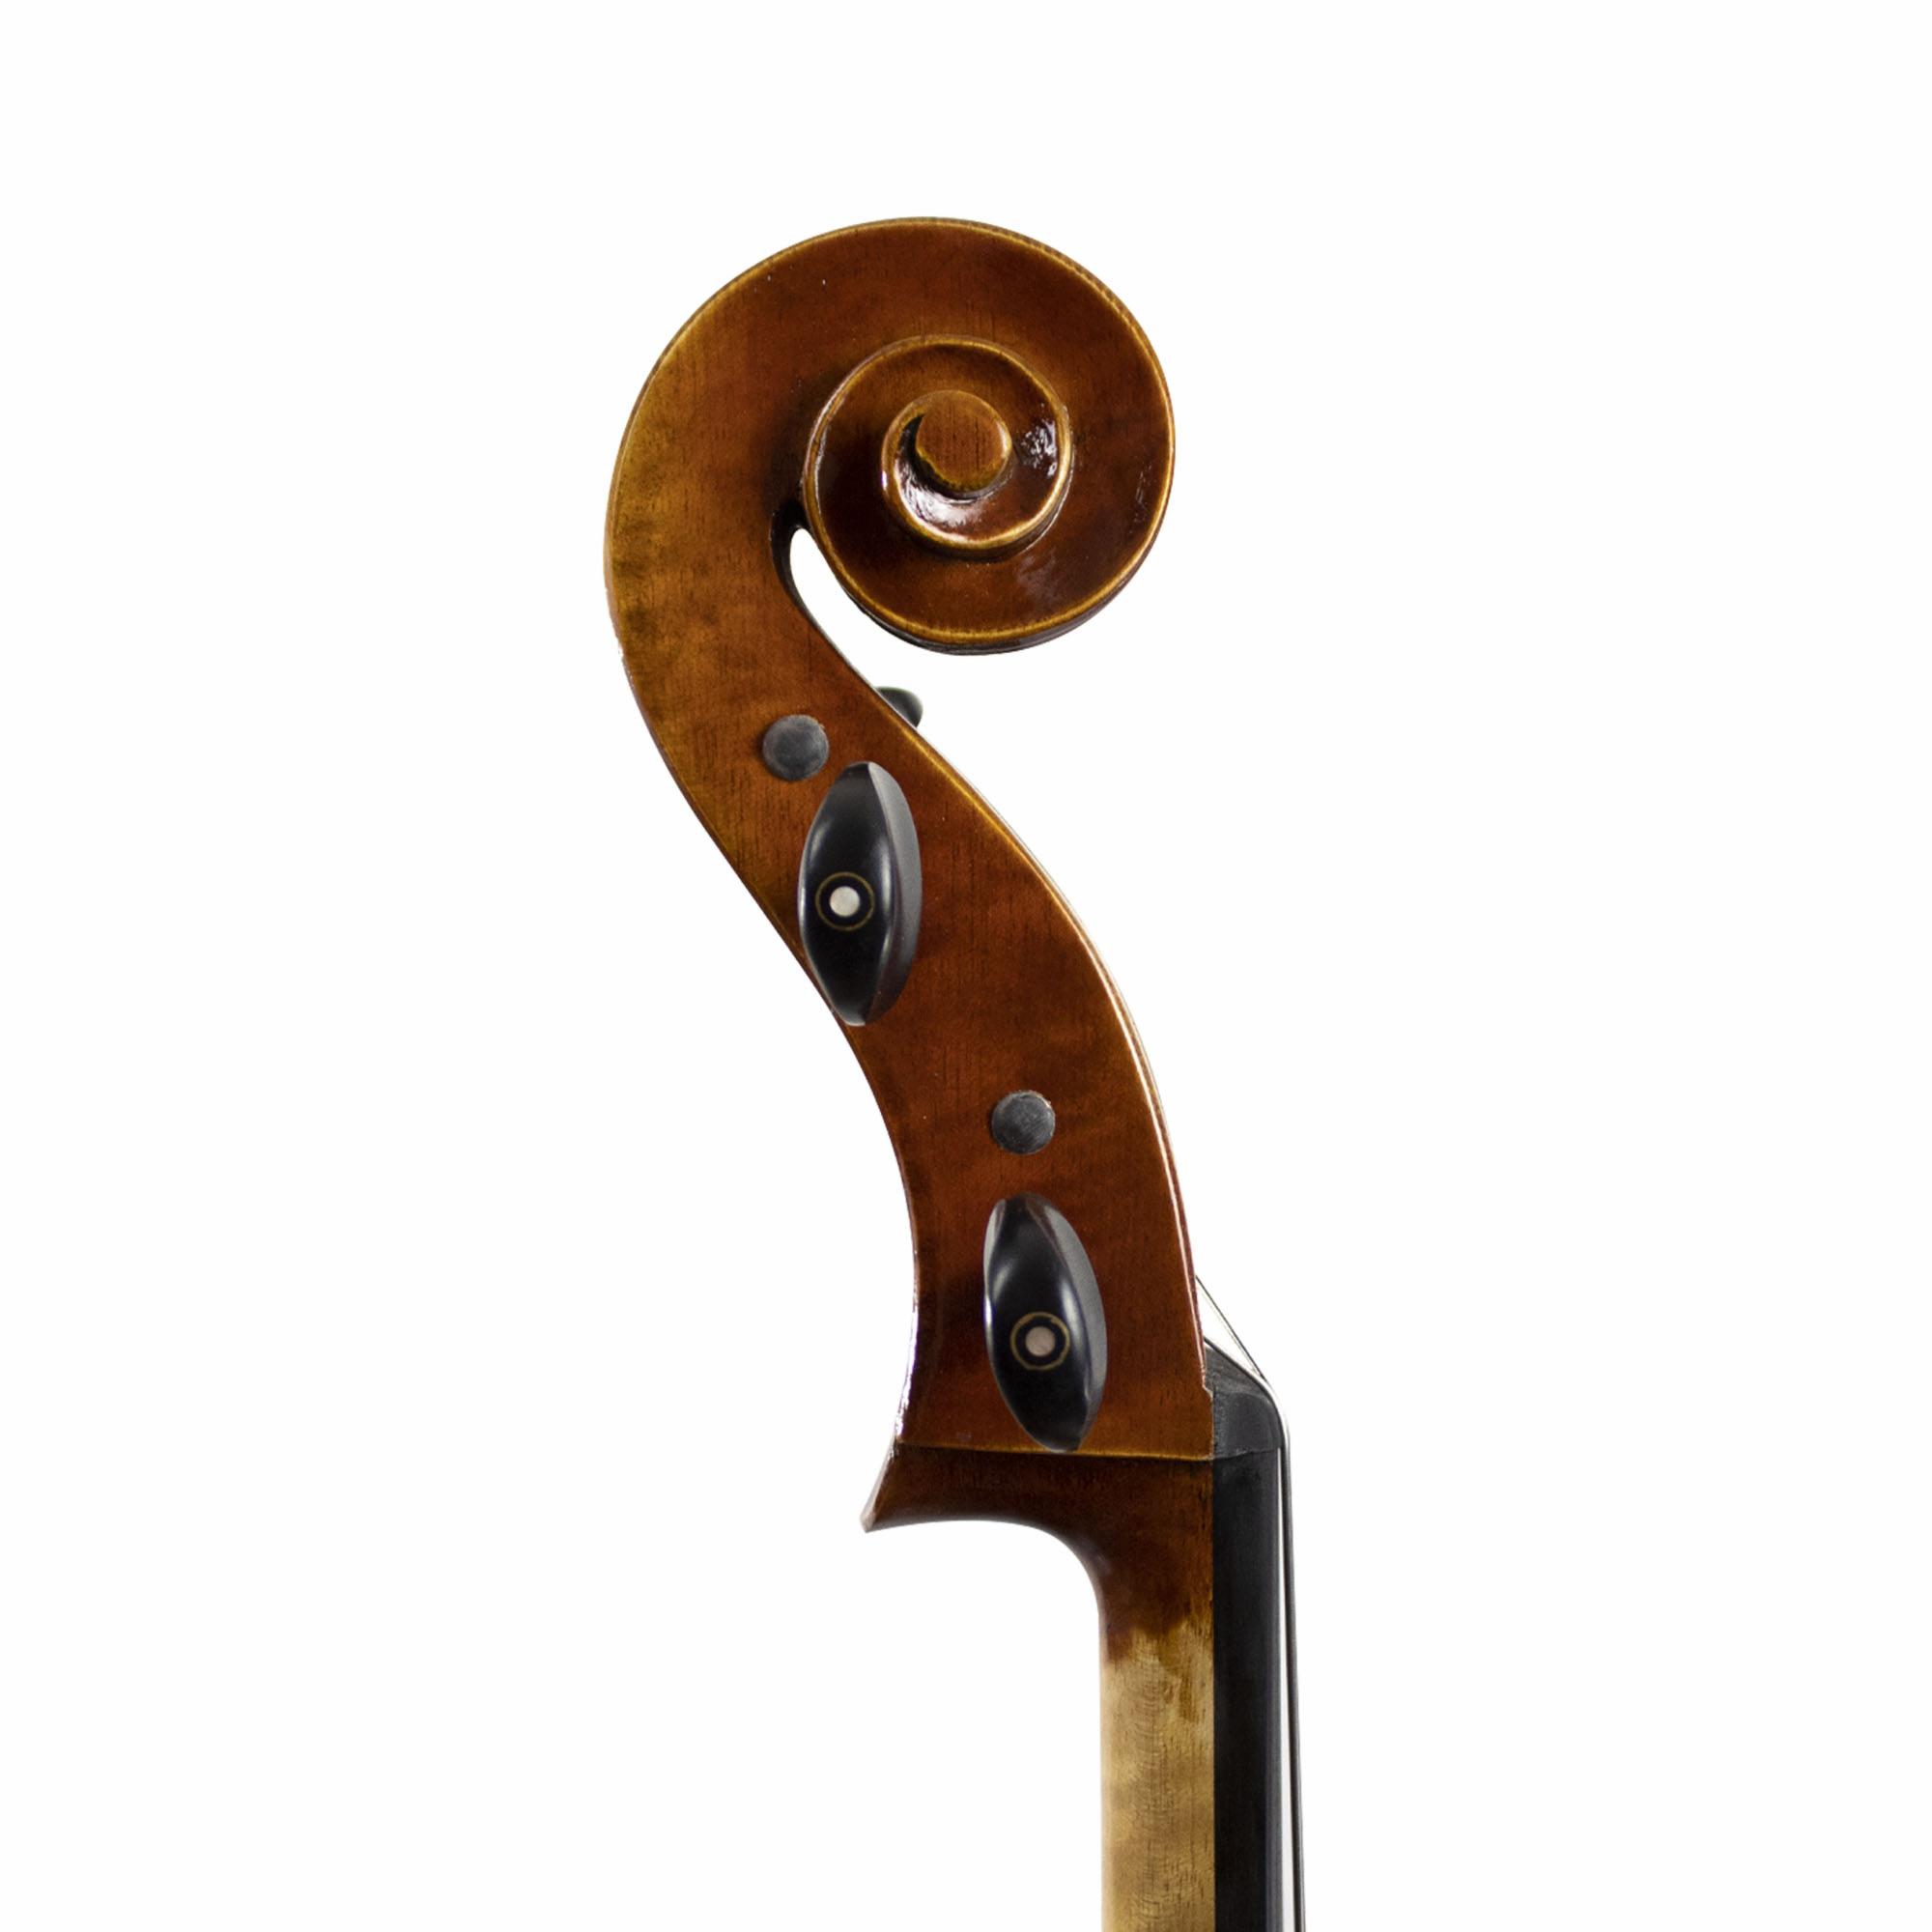 Hans Kroger Capriccio Cello